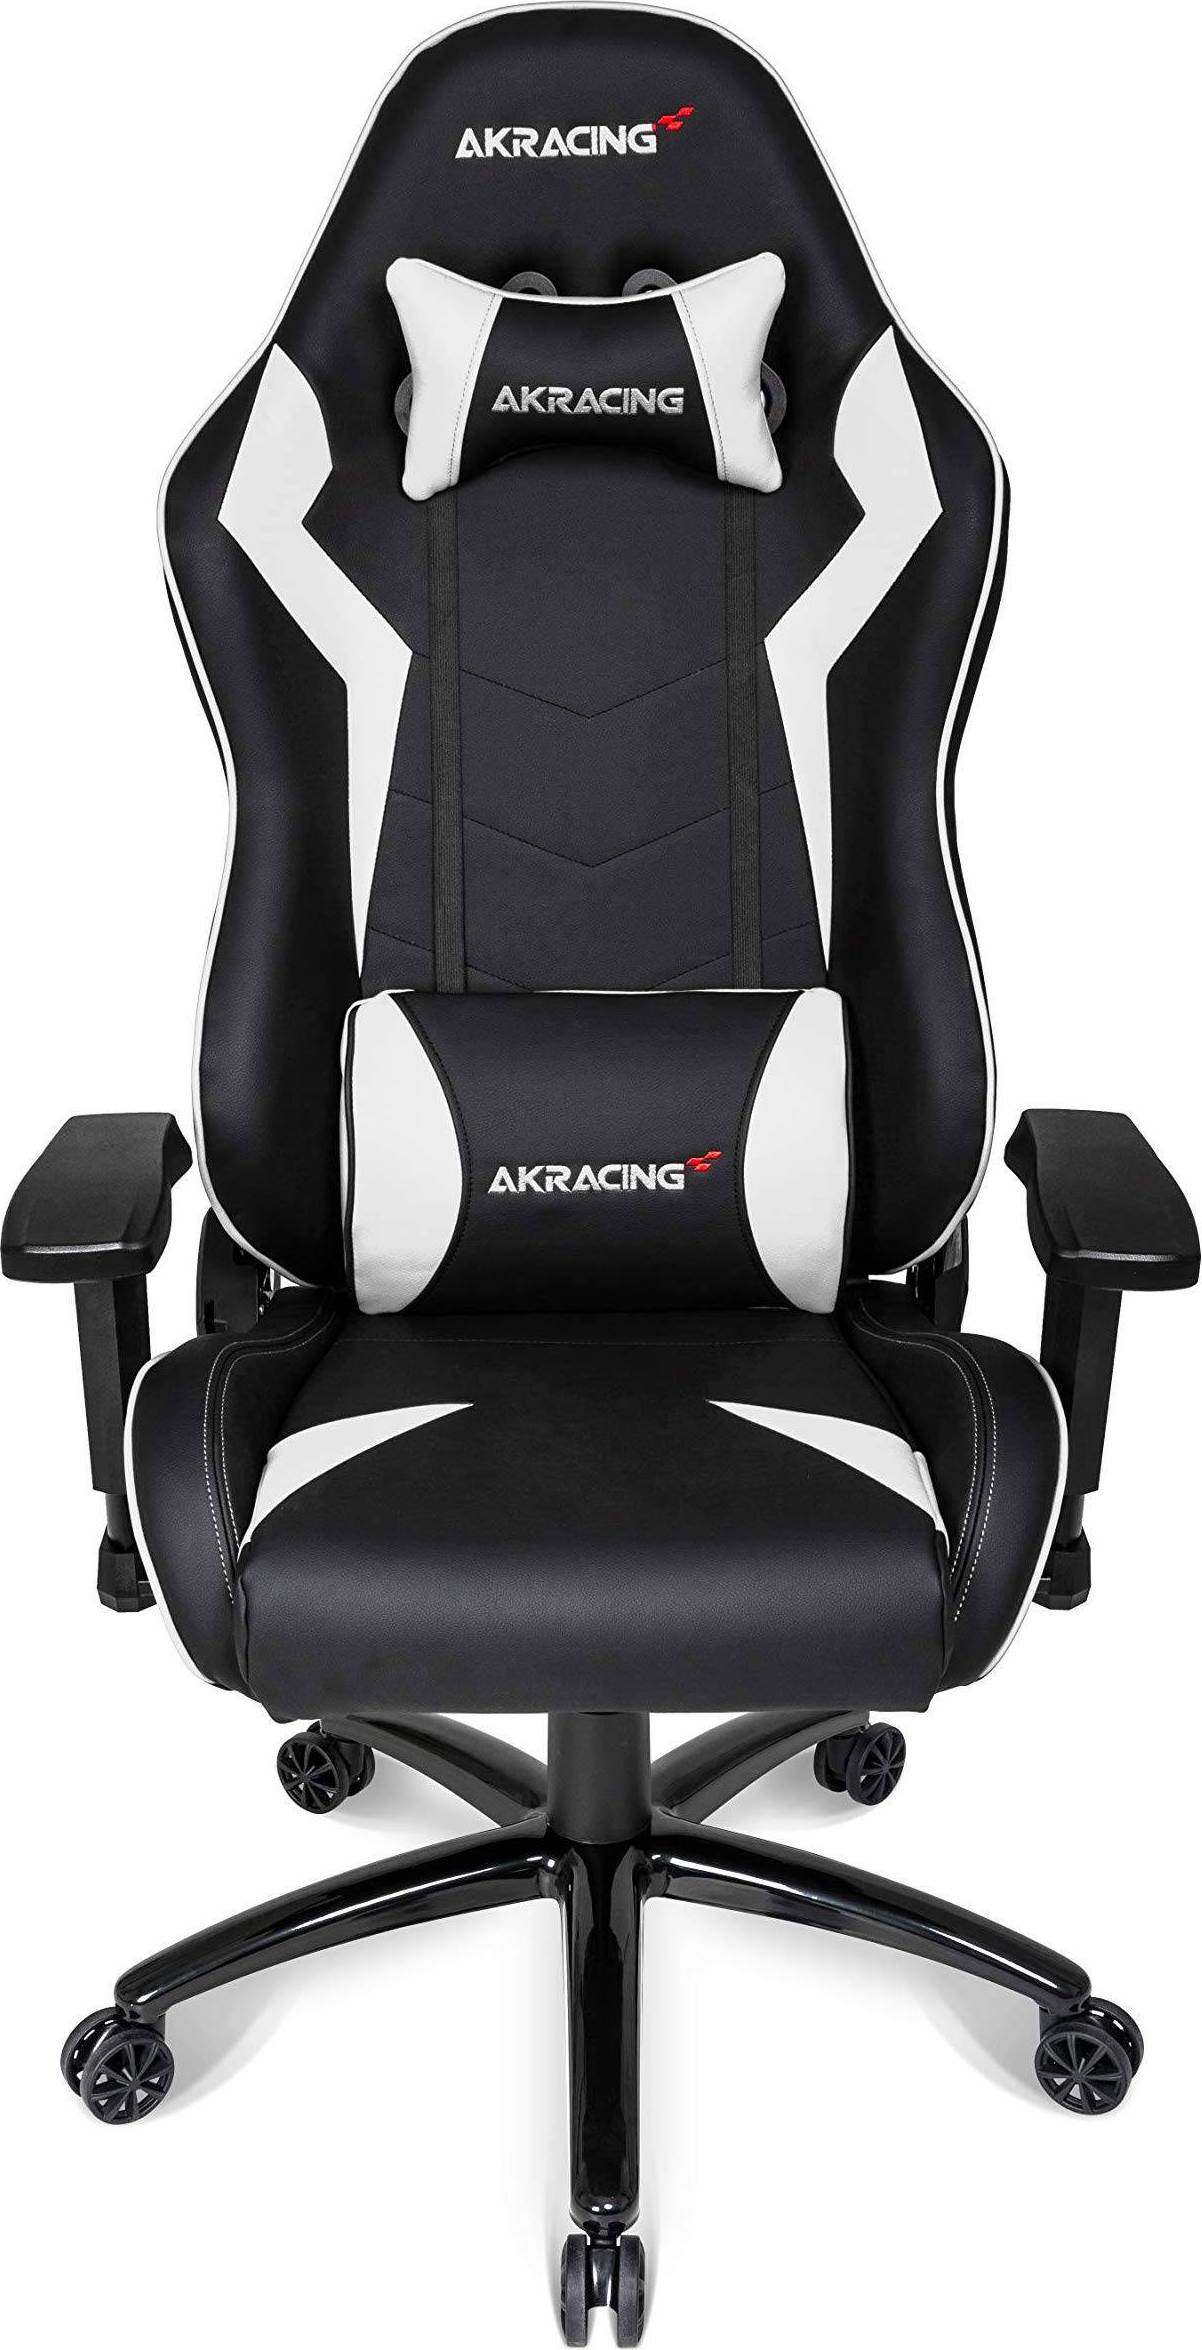  Bild på AKracing SX Gaming Chair - Black/White gamingstol